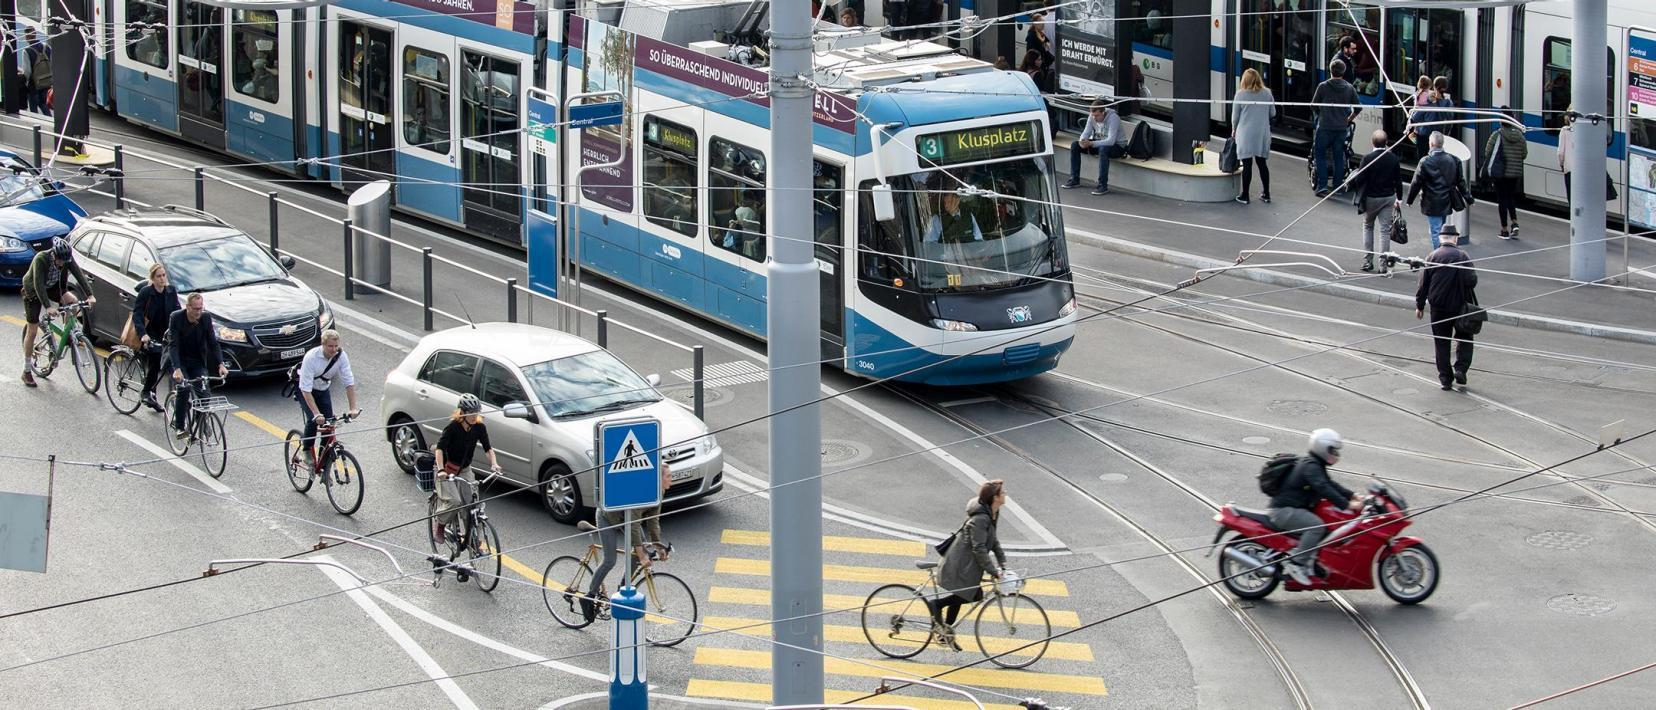 Das Bild zeigt das Central in der Stadt Zürich, mit Trams, Autos, Velos und Fussgängern.